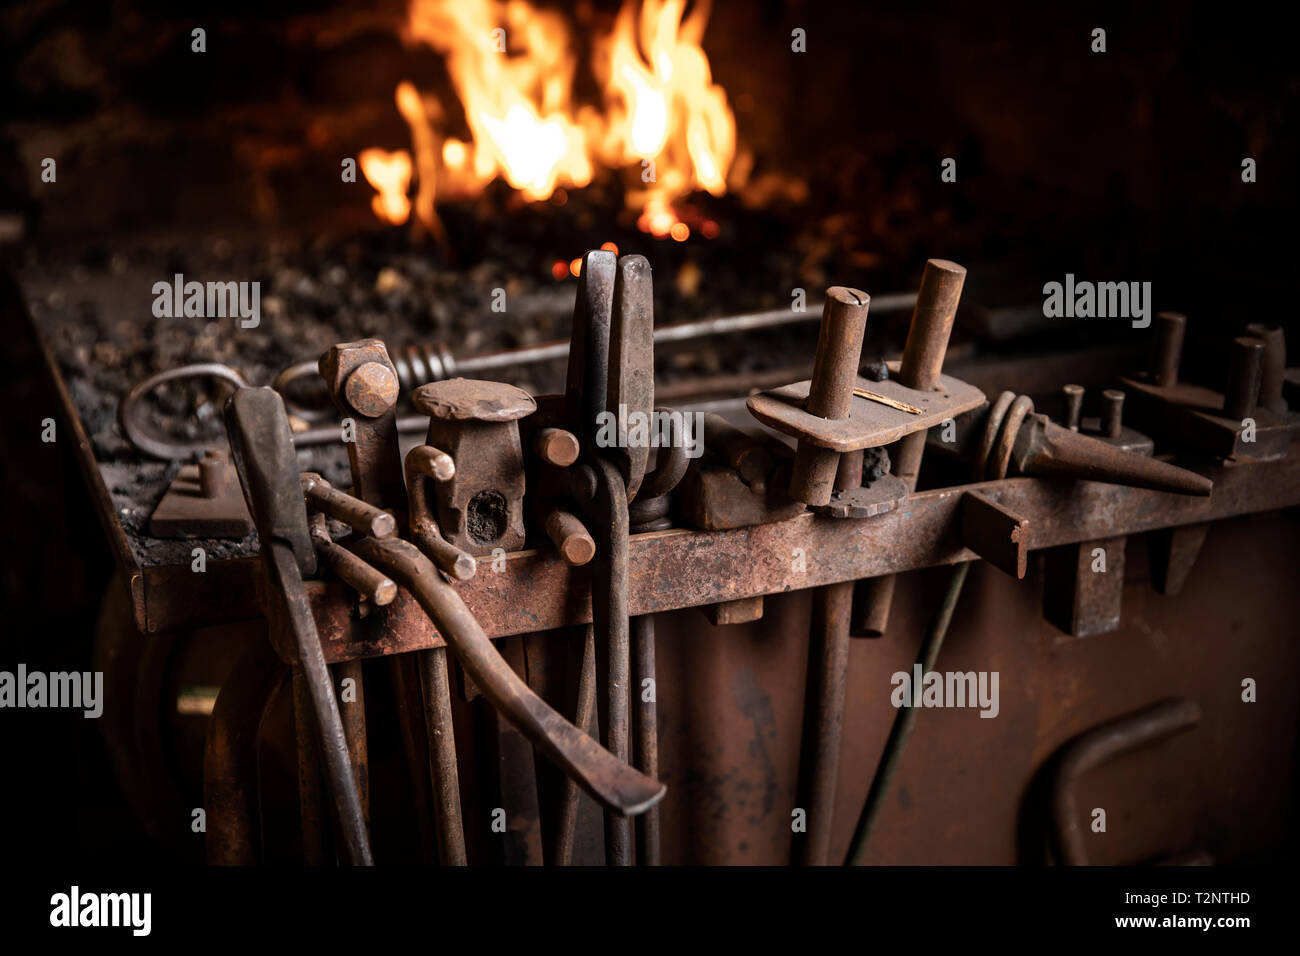 Ligne d'outils à l'avant du feu dans l'atelier de forgeron Banque D'Images